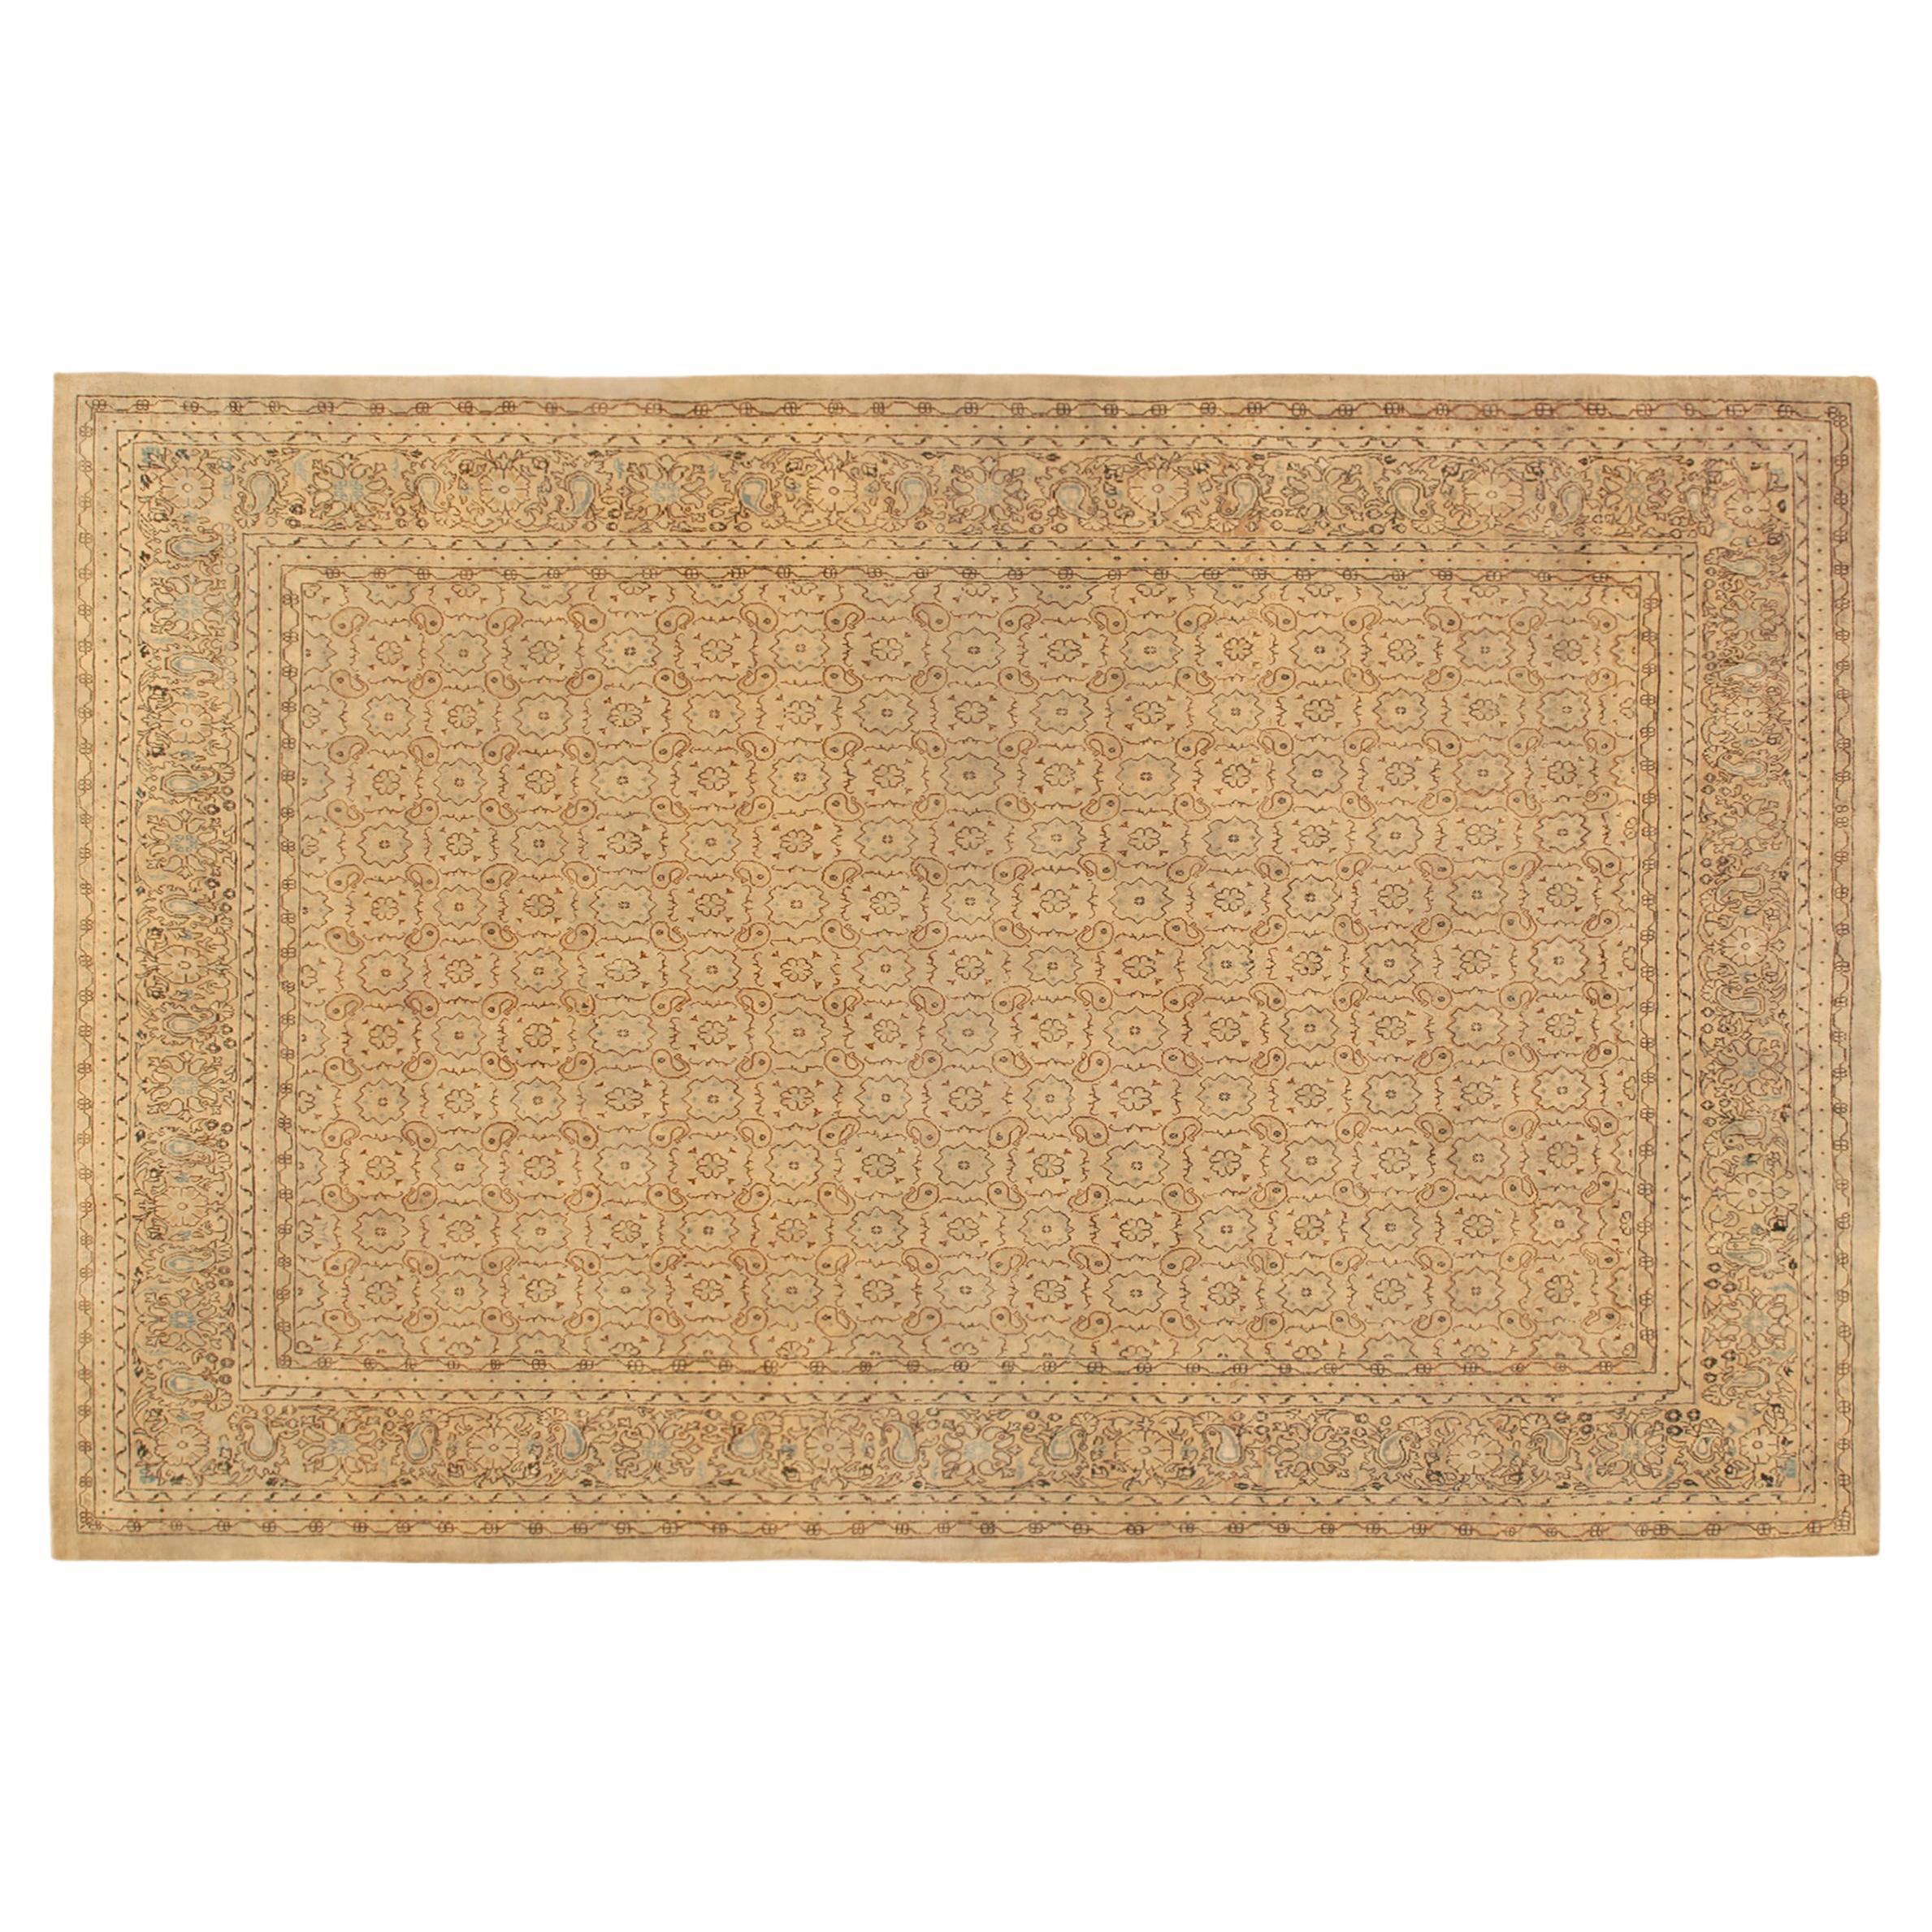 Antique Turkish Sivas Oriental Carpet, in Room Size w/ Rosettes